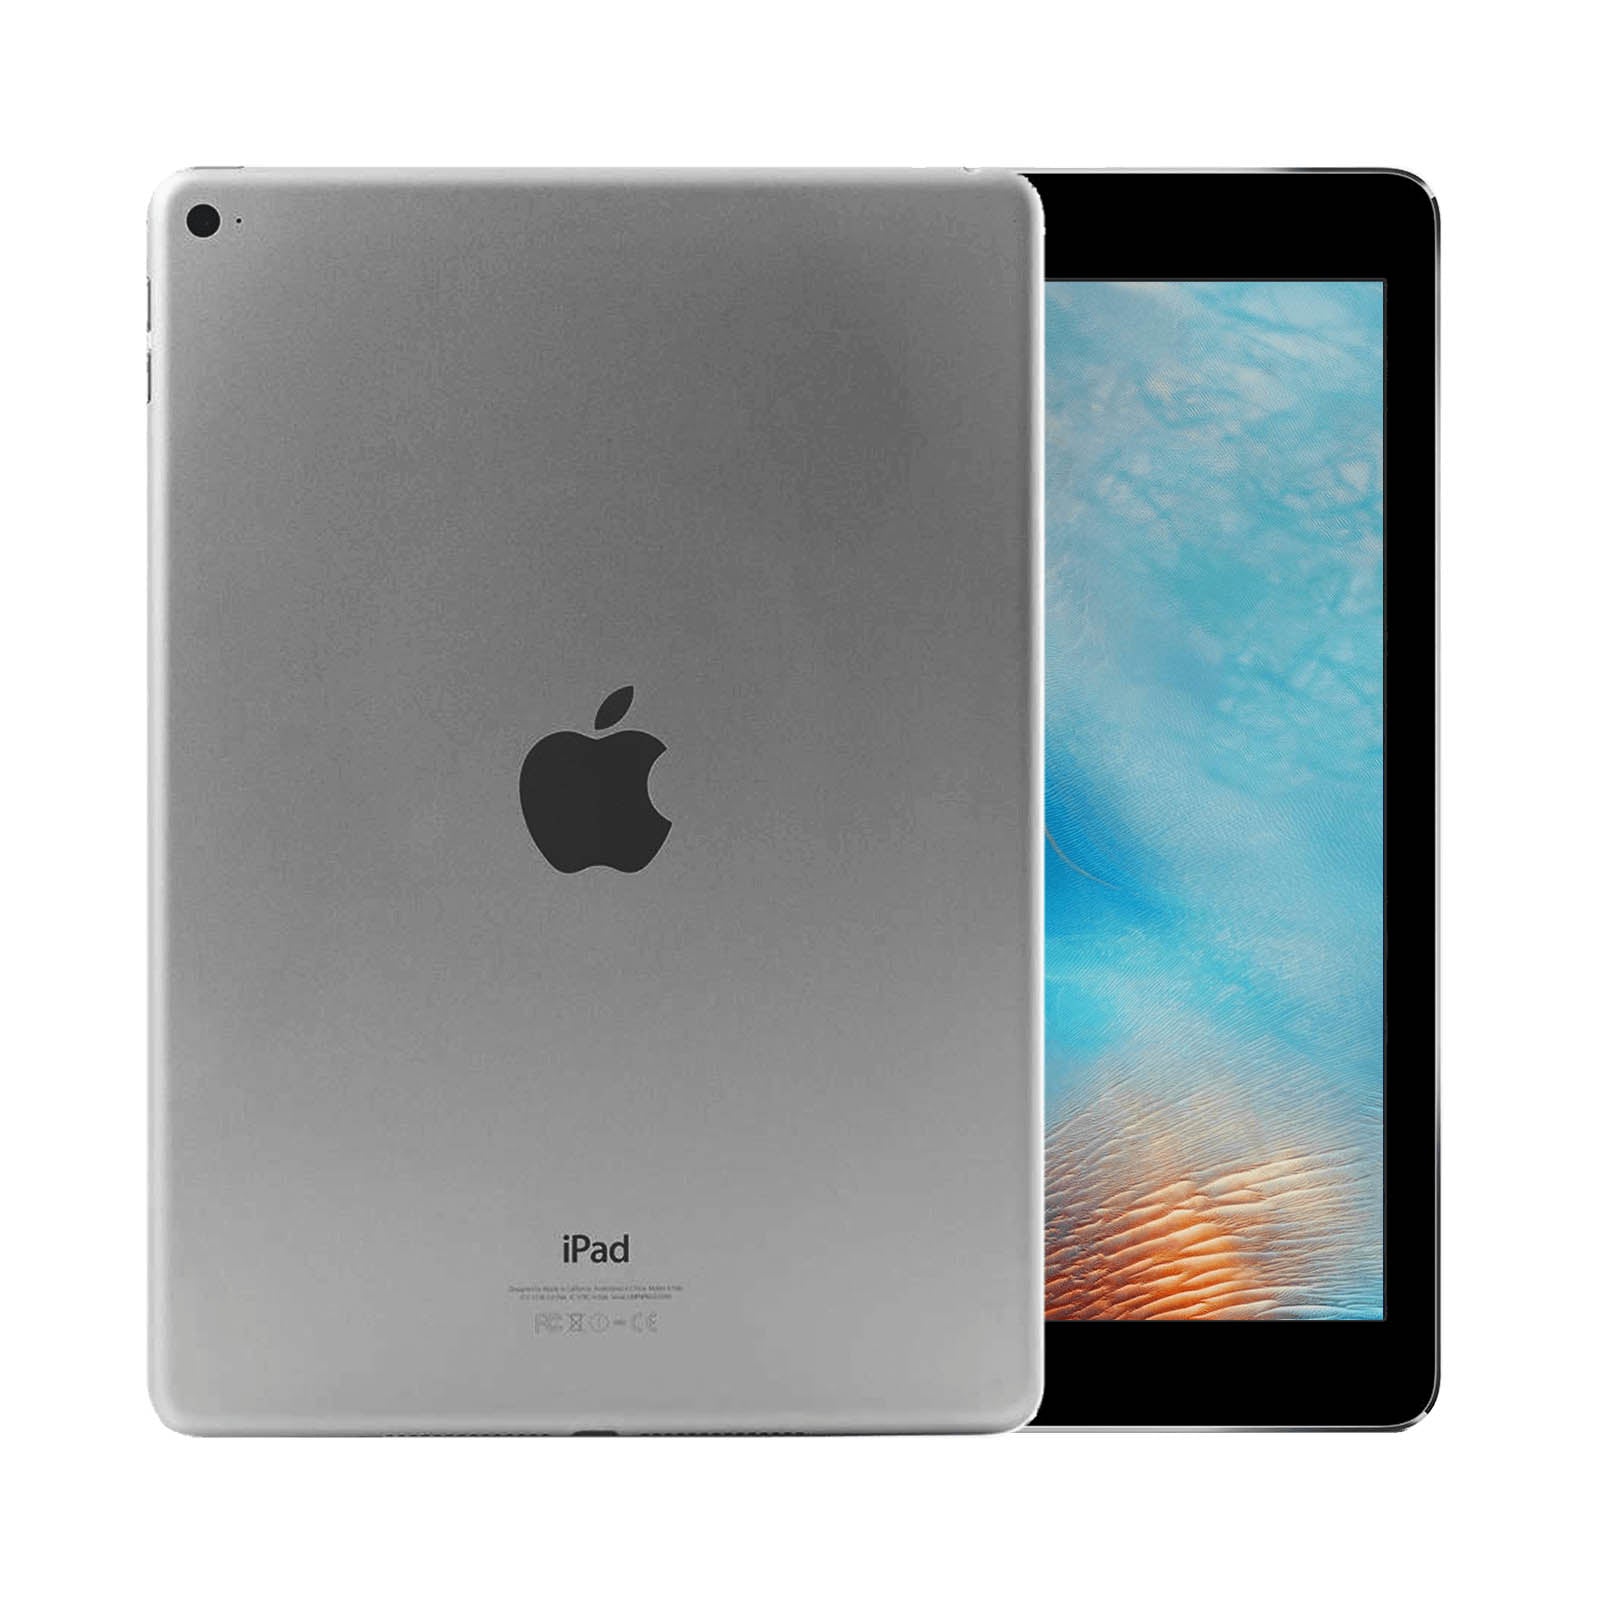 Apple iPad Air 2 16GB WiFi - Space Grey – Loop Mobile - AU